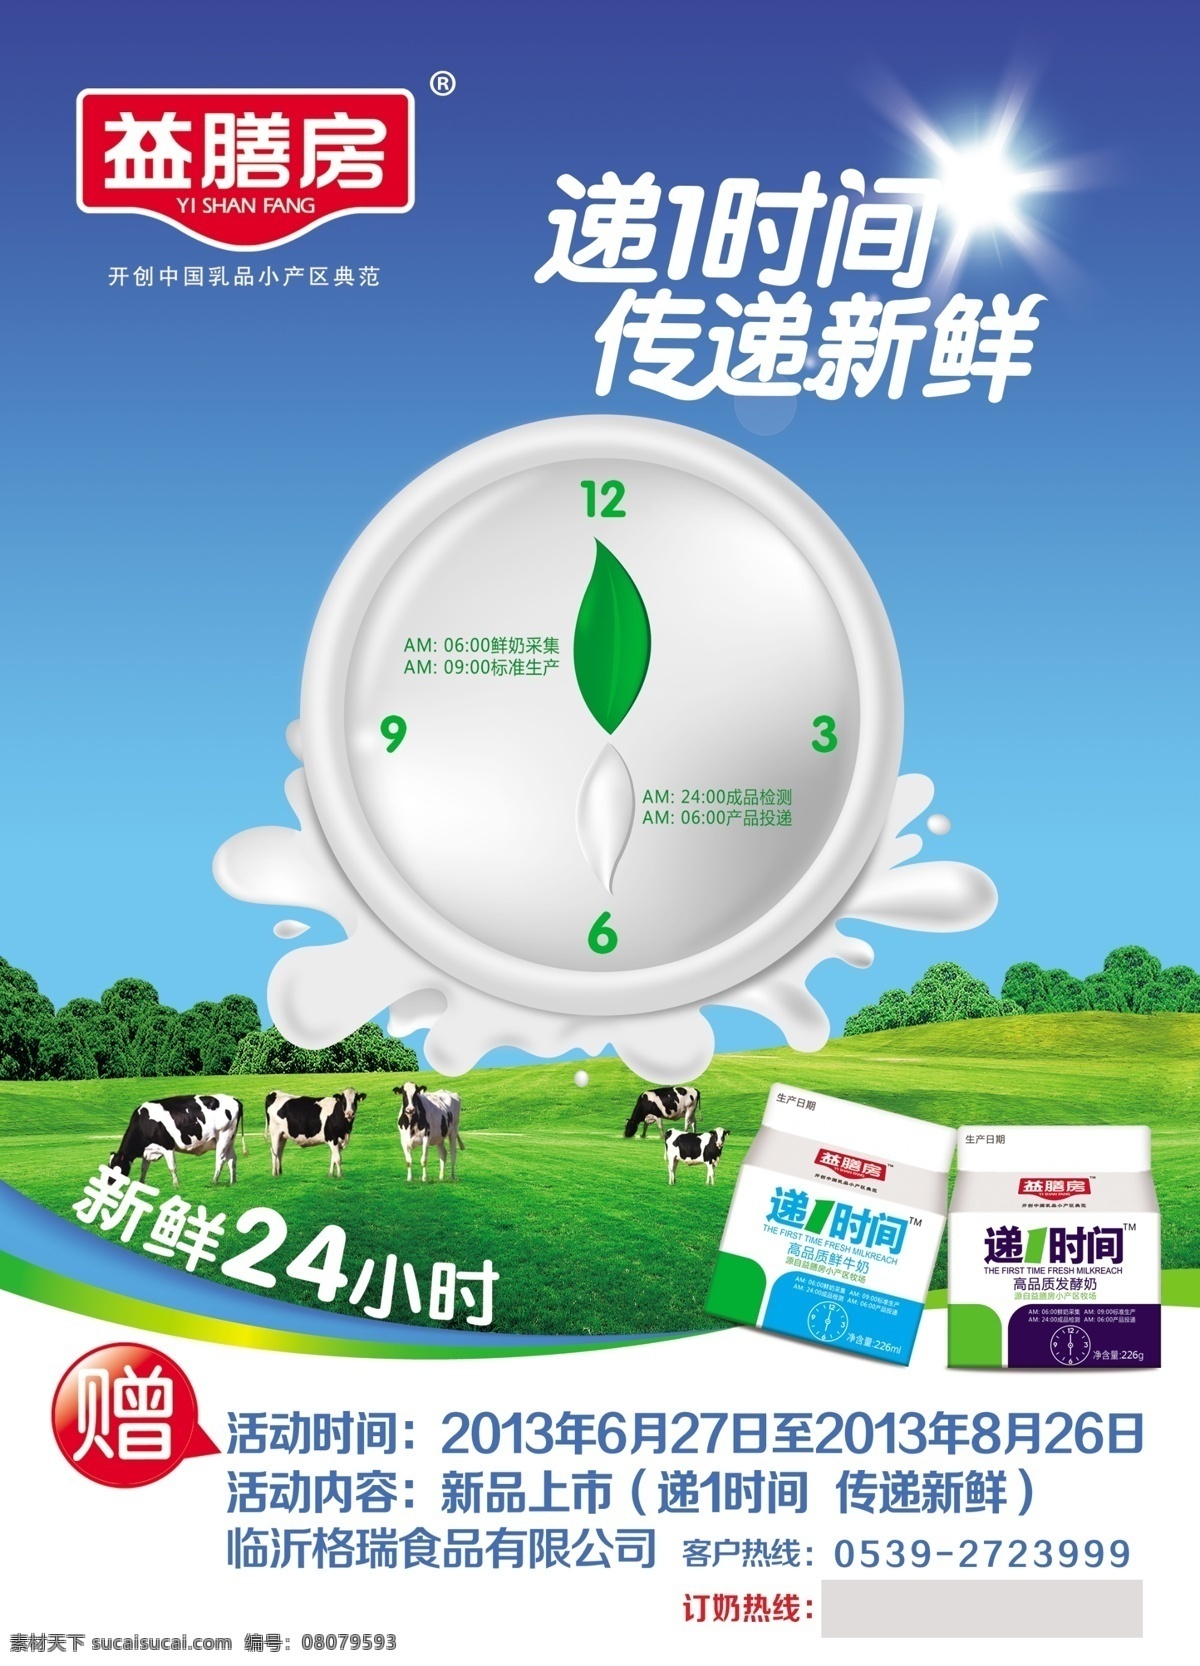 益膳房酸牛奶 益膳房 酸牛奶 第一时间 传递新鲜 24小时 厂家广告 国内广告设计 广告设计模板 源文件